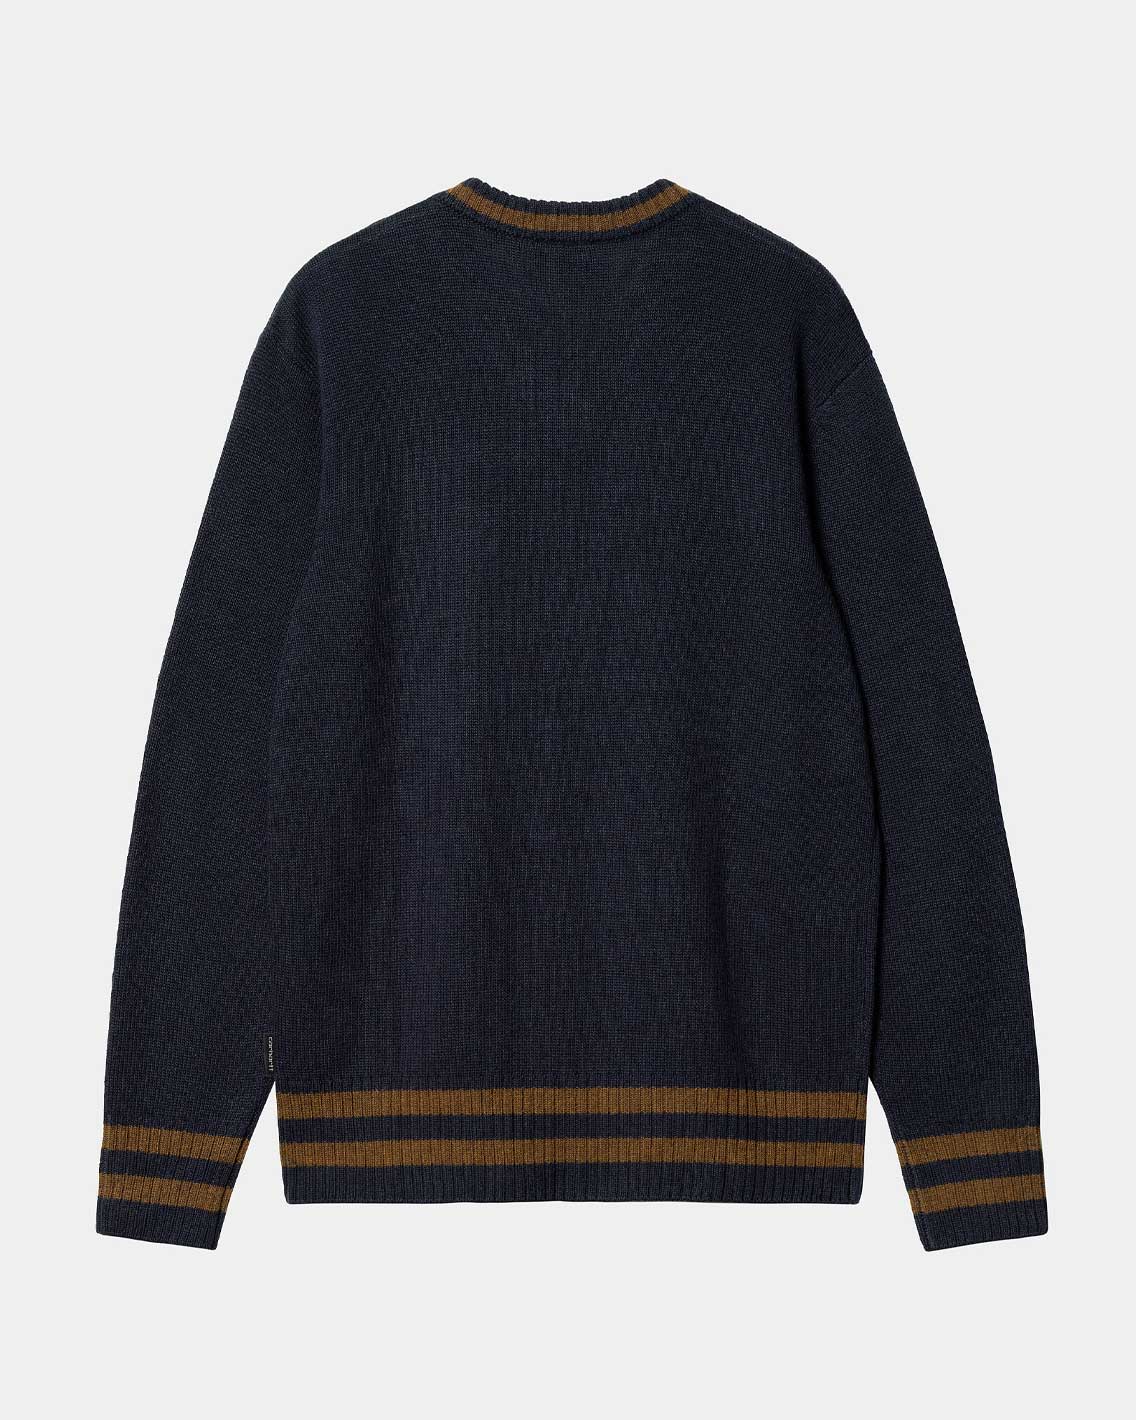 Carhartt - Stanford Sweater - Dark Navy / Deep H Brown